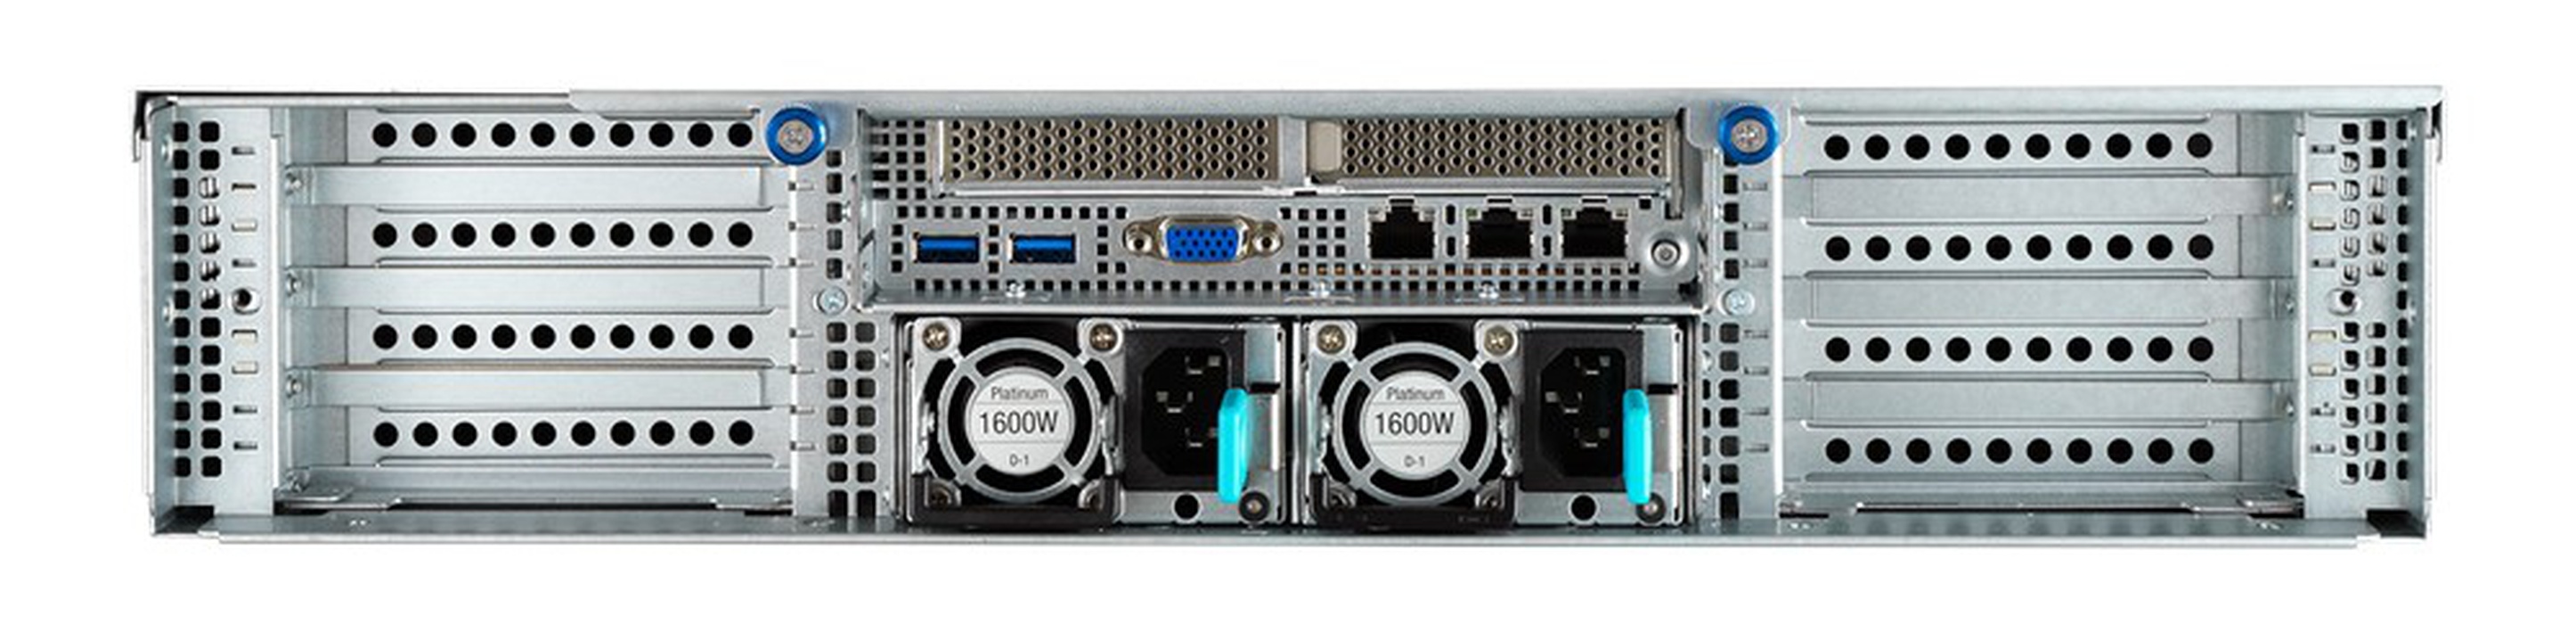 AIME A4000 Multi GPU Rack Server - Back